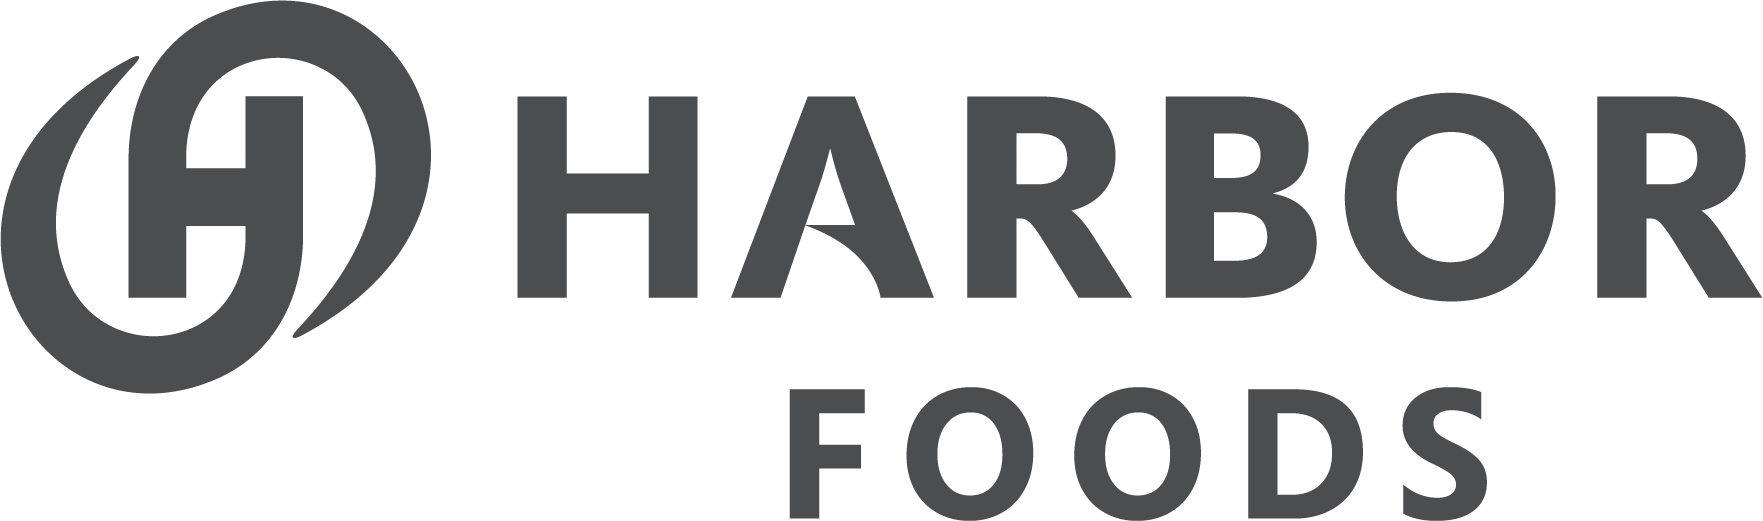 Harbor Foods